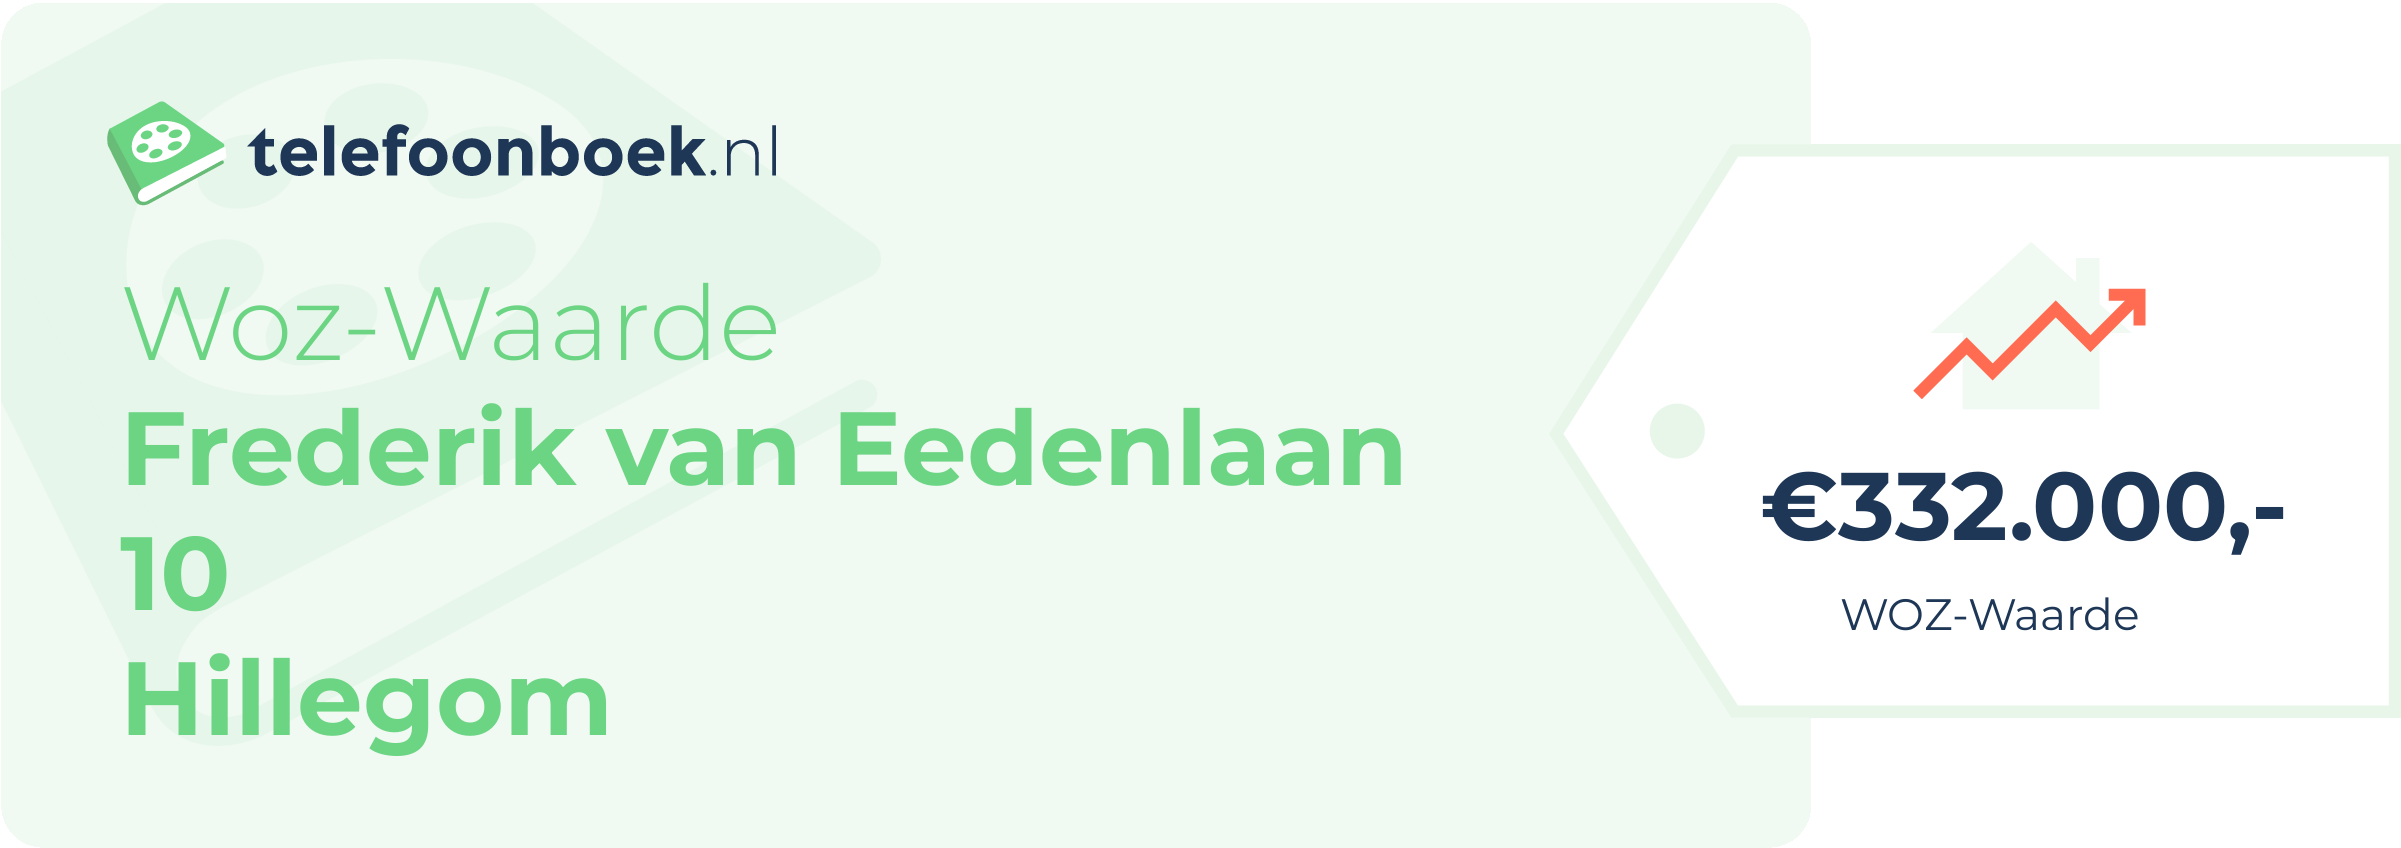 WOZ-waarde Frederik Van Eedenlaan 10 Hillegom